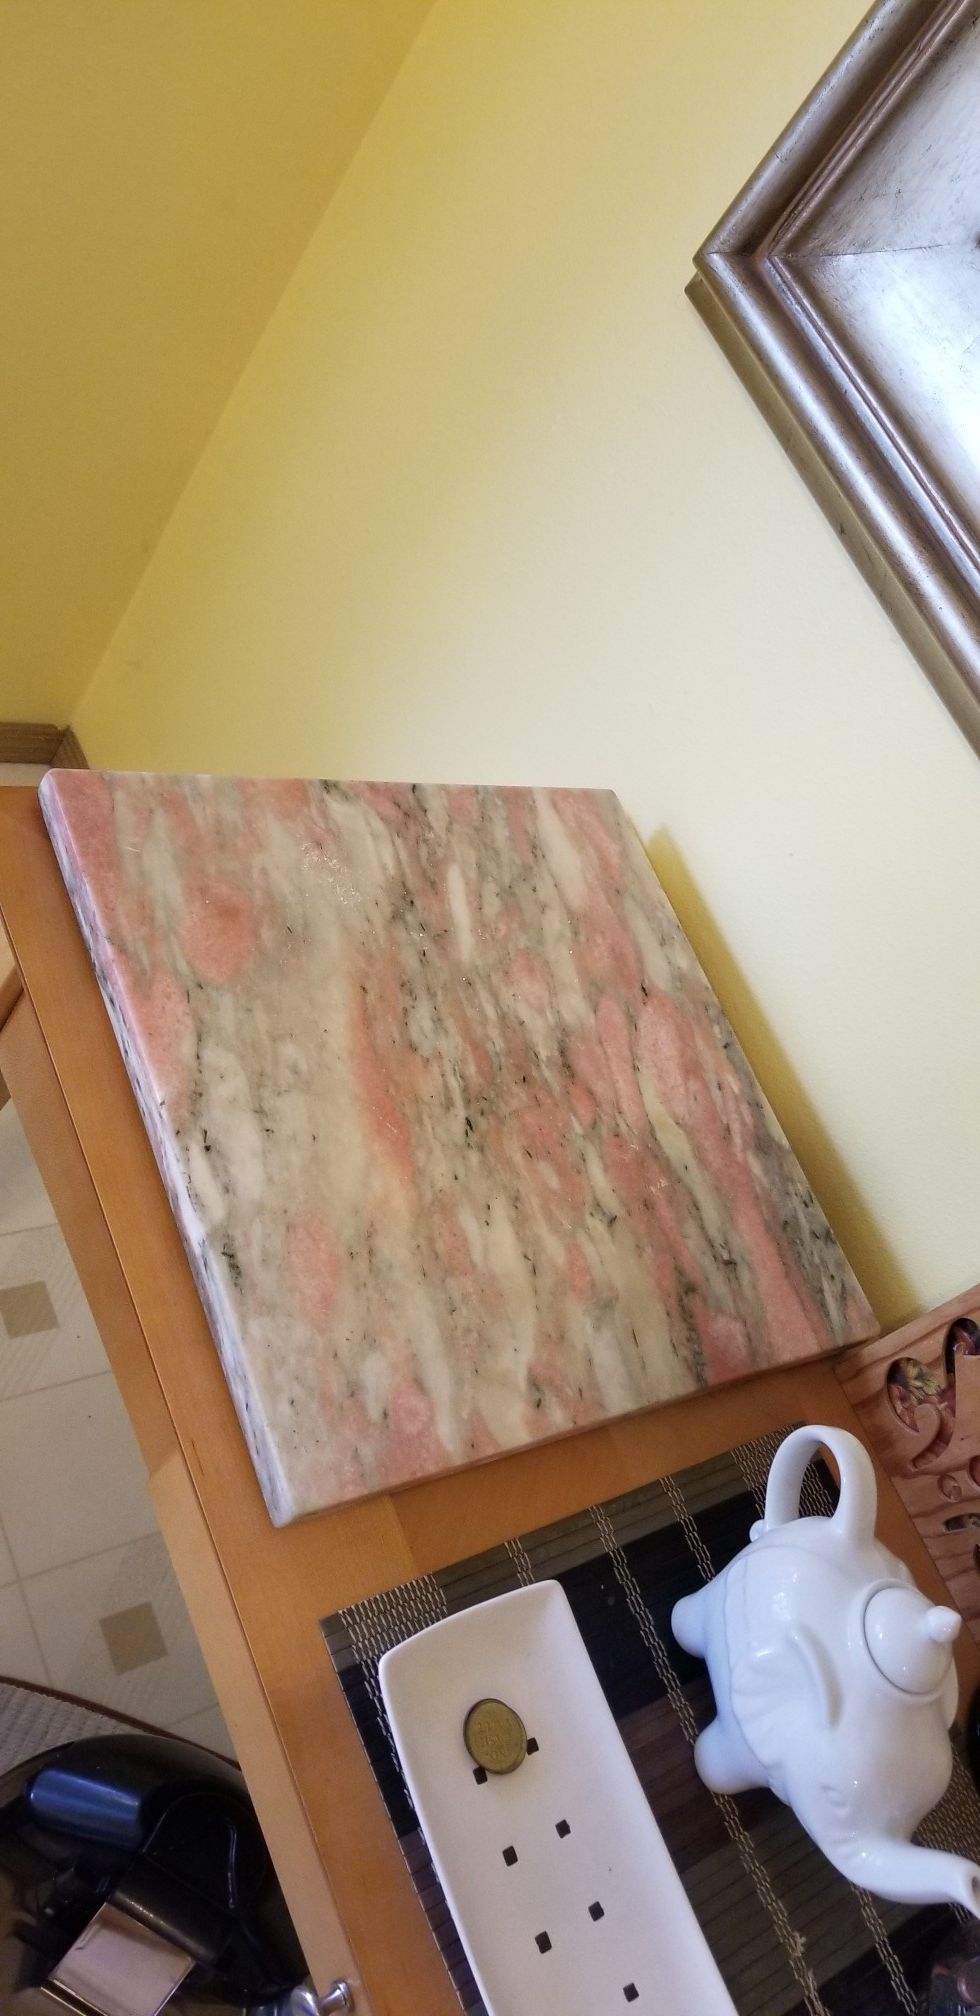 Square marble cutting board in Auburn WA